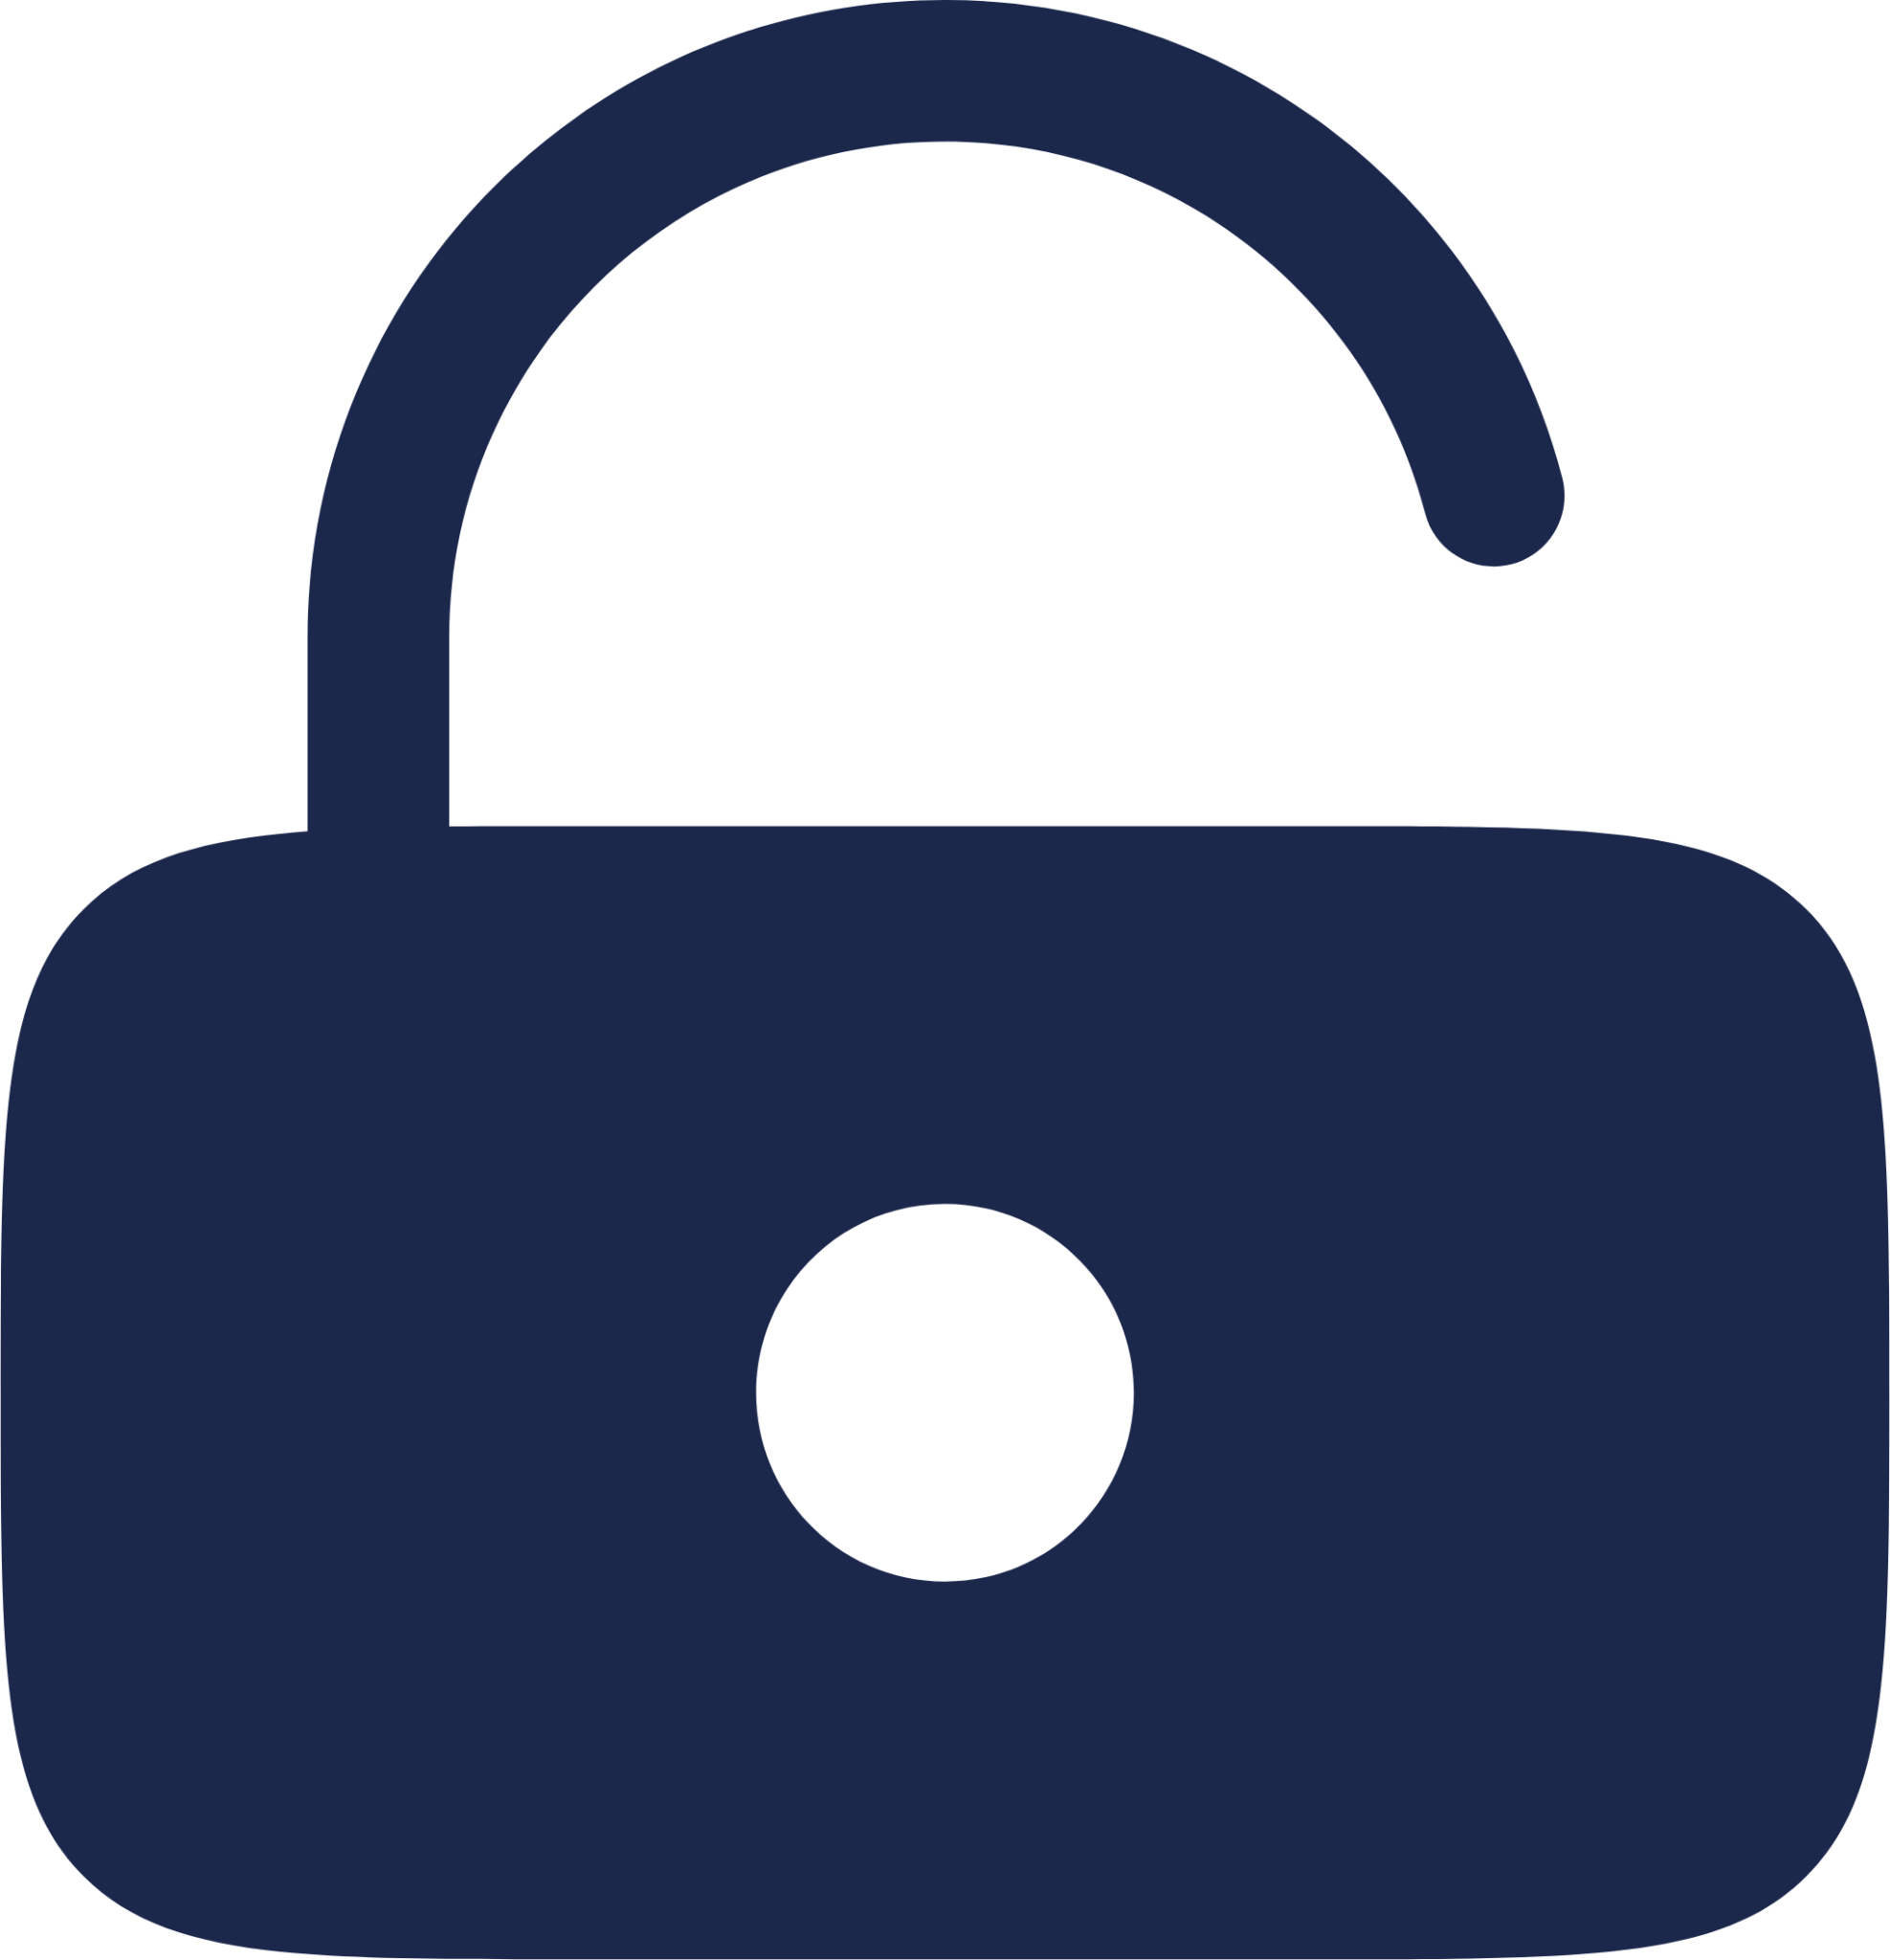 Lock Keyhole Unlocked icon